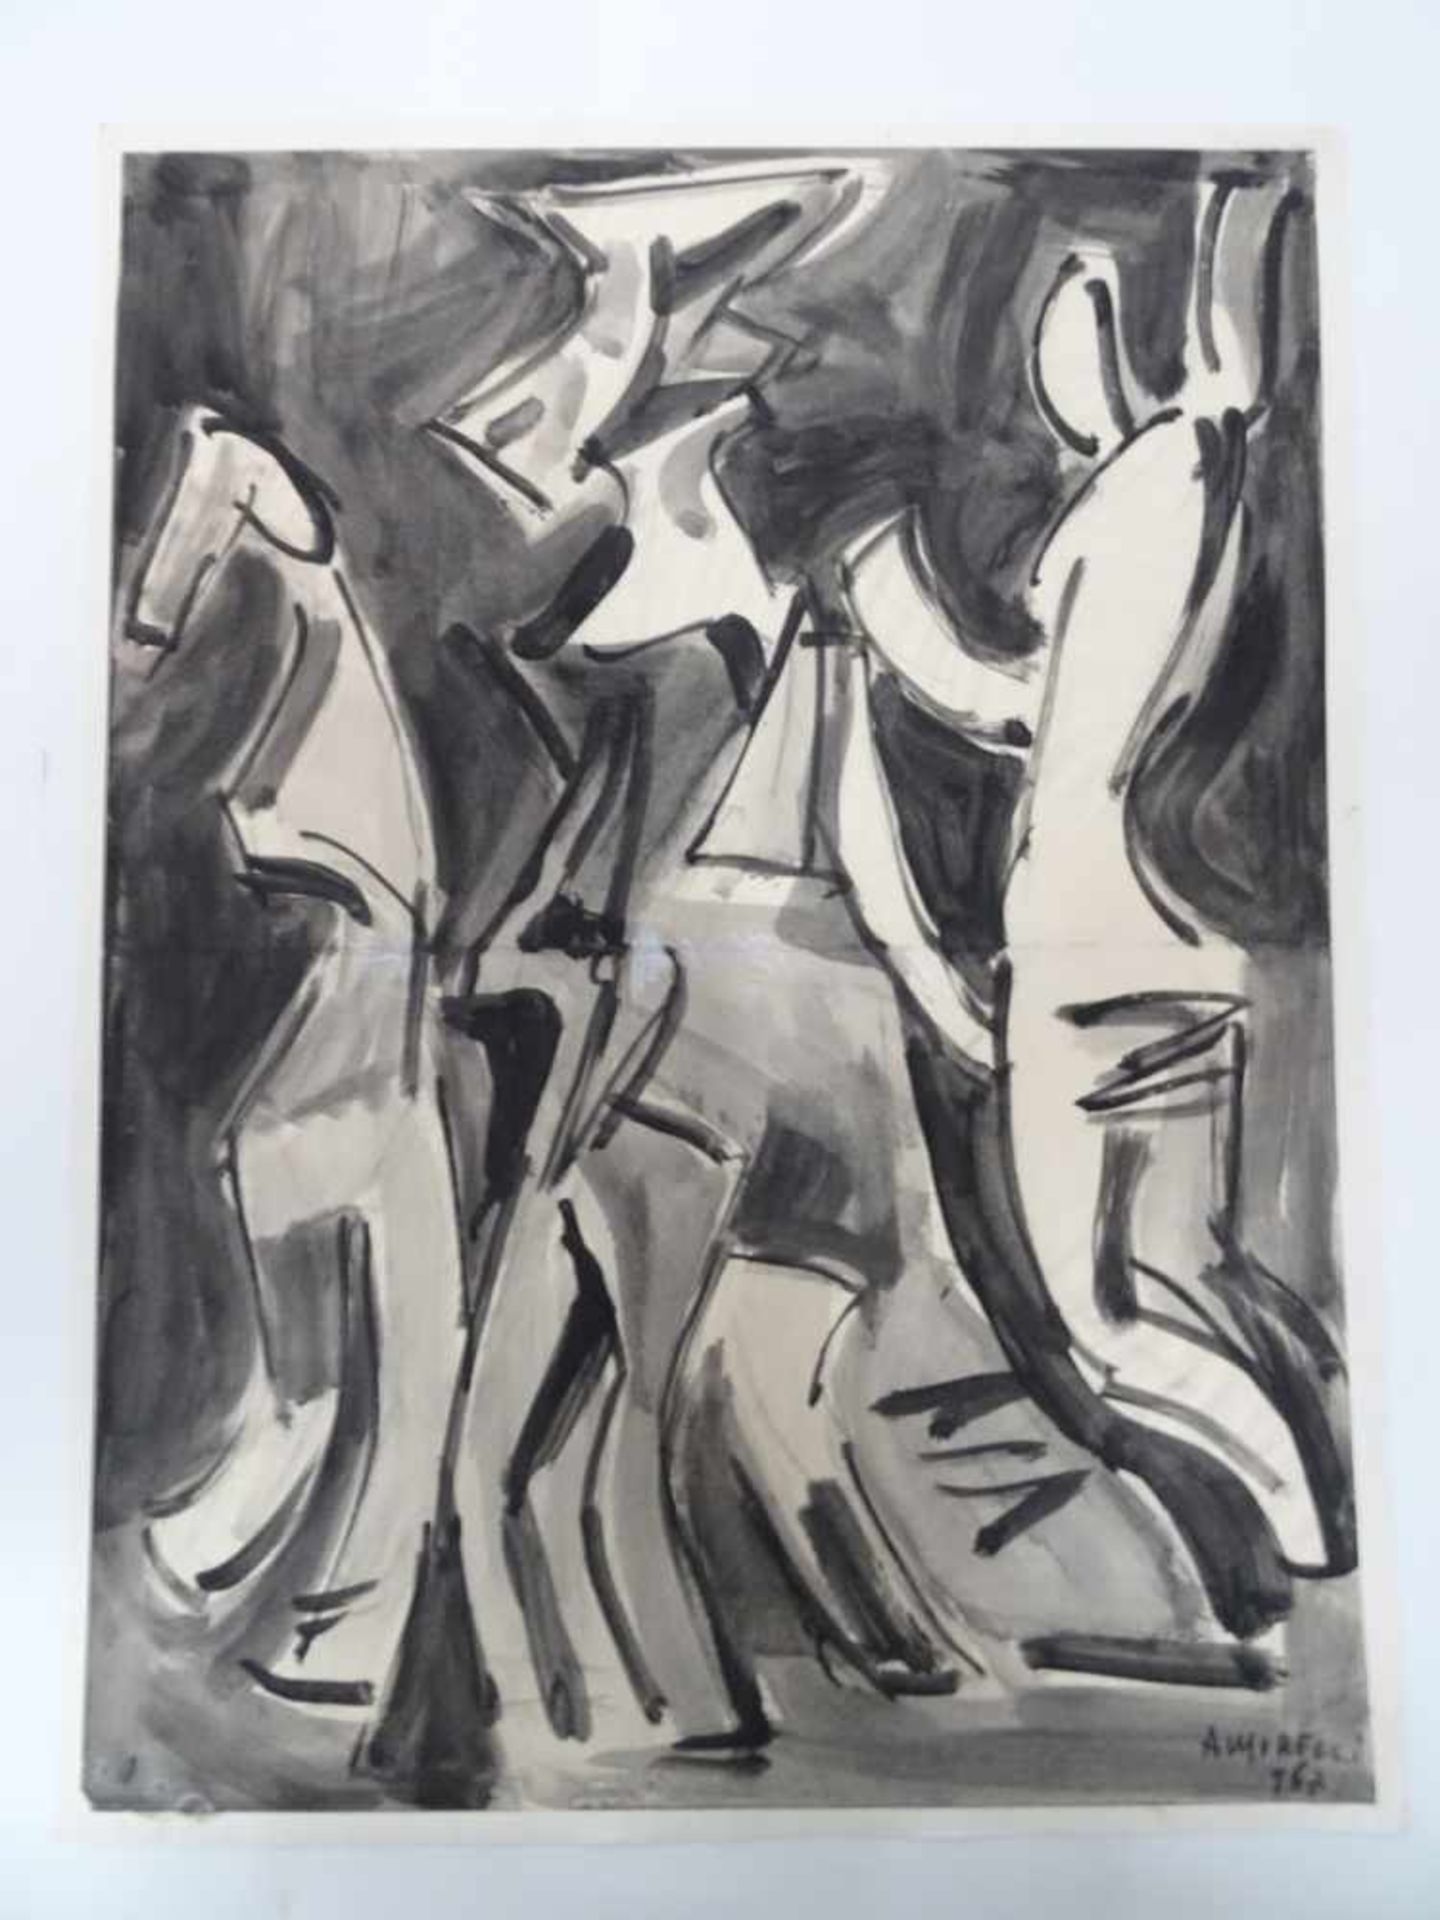 Abstrakte Personen in Schwarz-Weiß. Alfonso Amorelli (1898 - Palermo - 1969). Aquarell auf Papier,